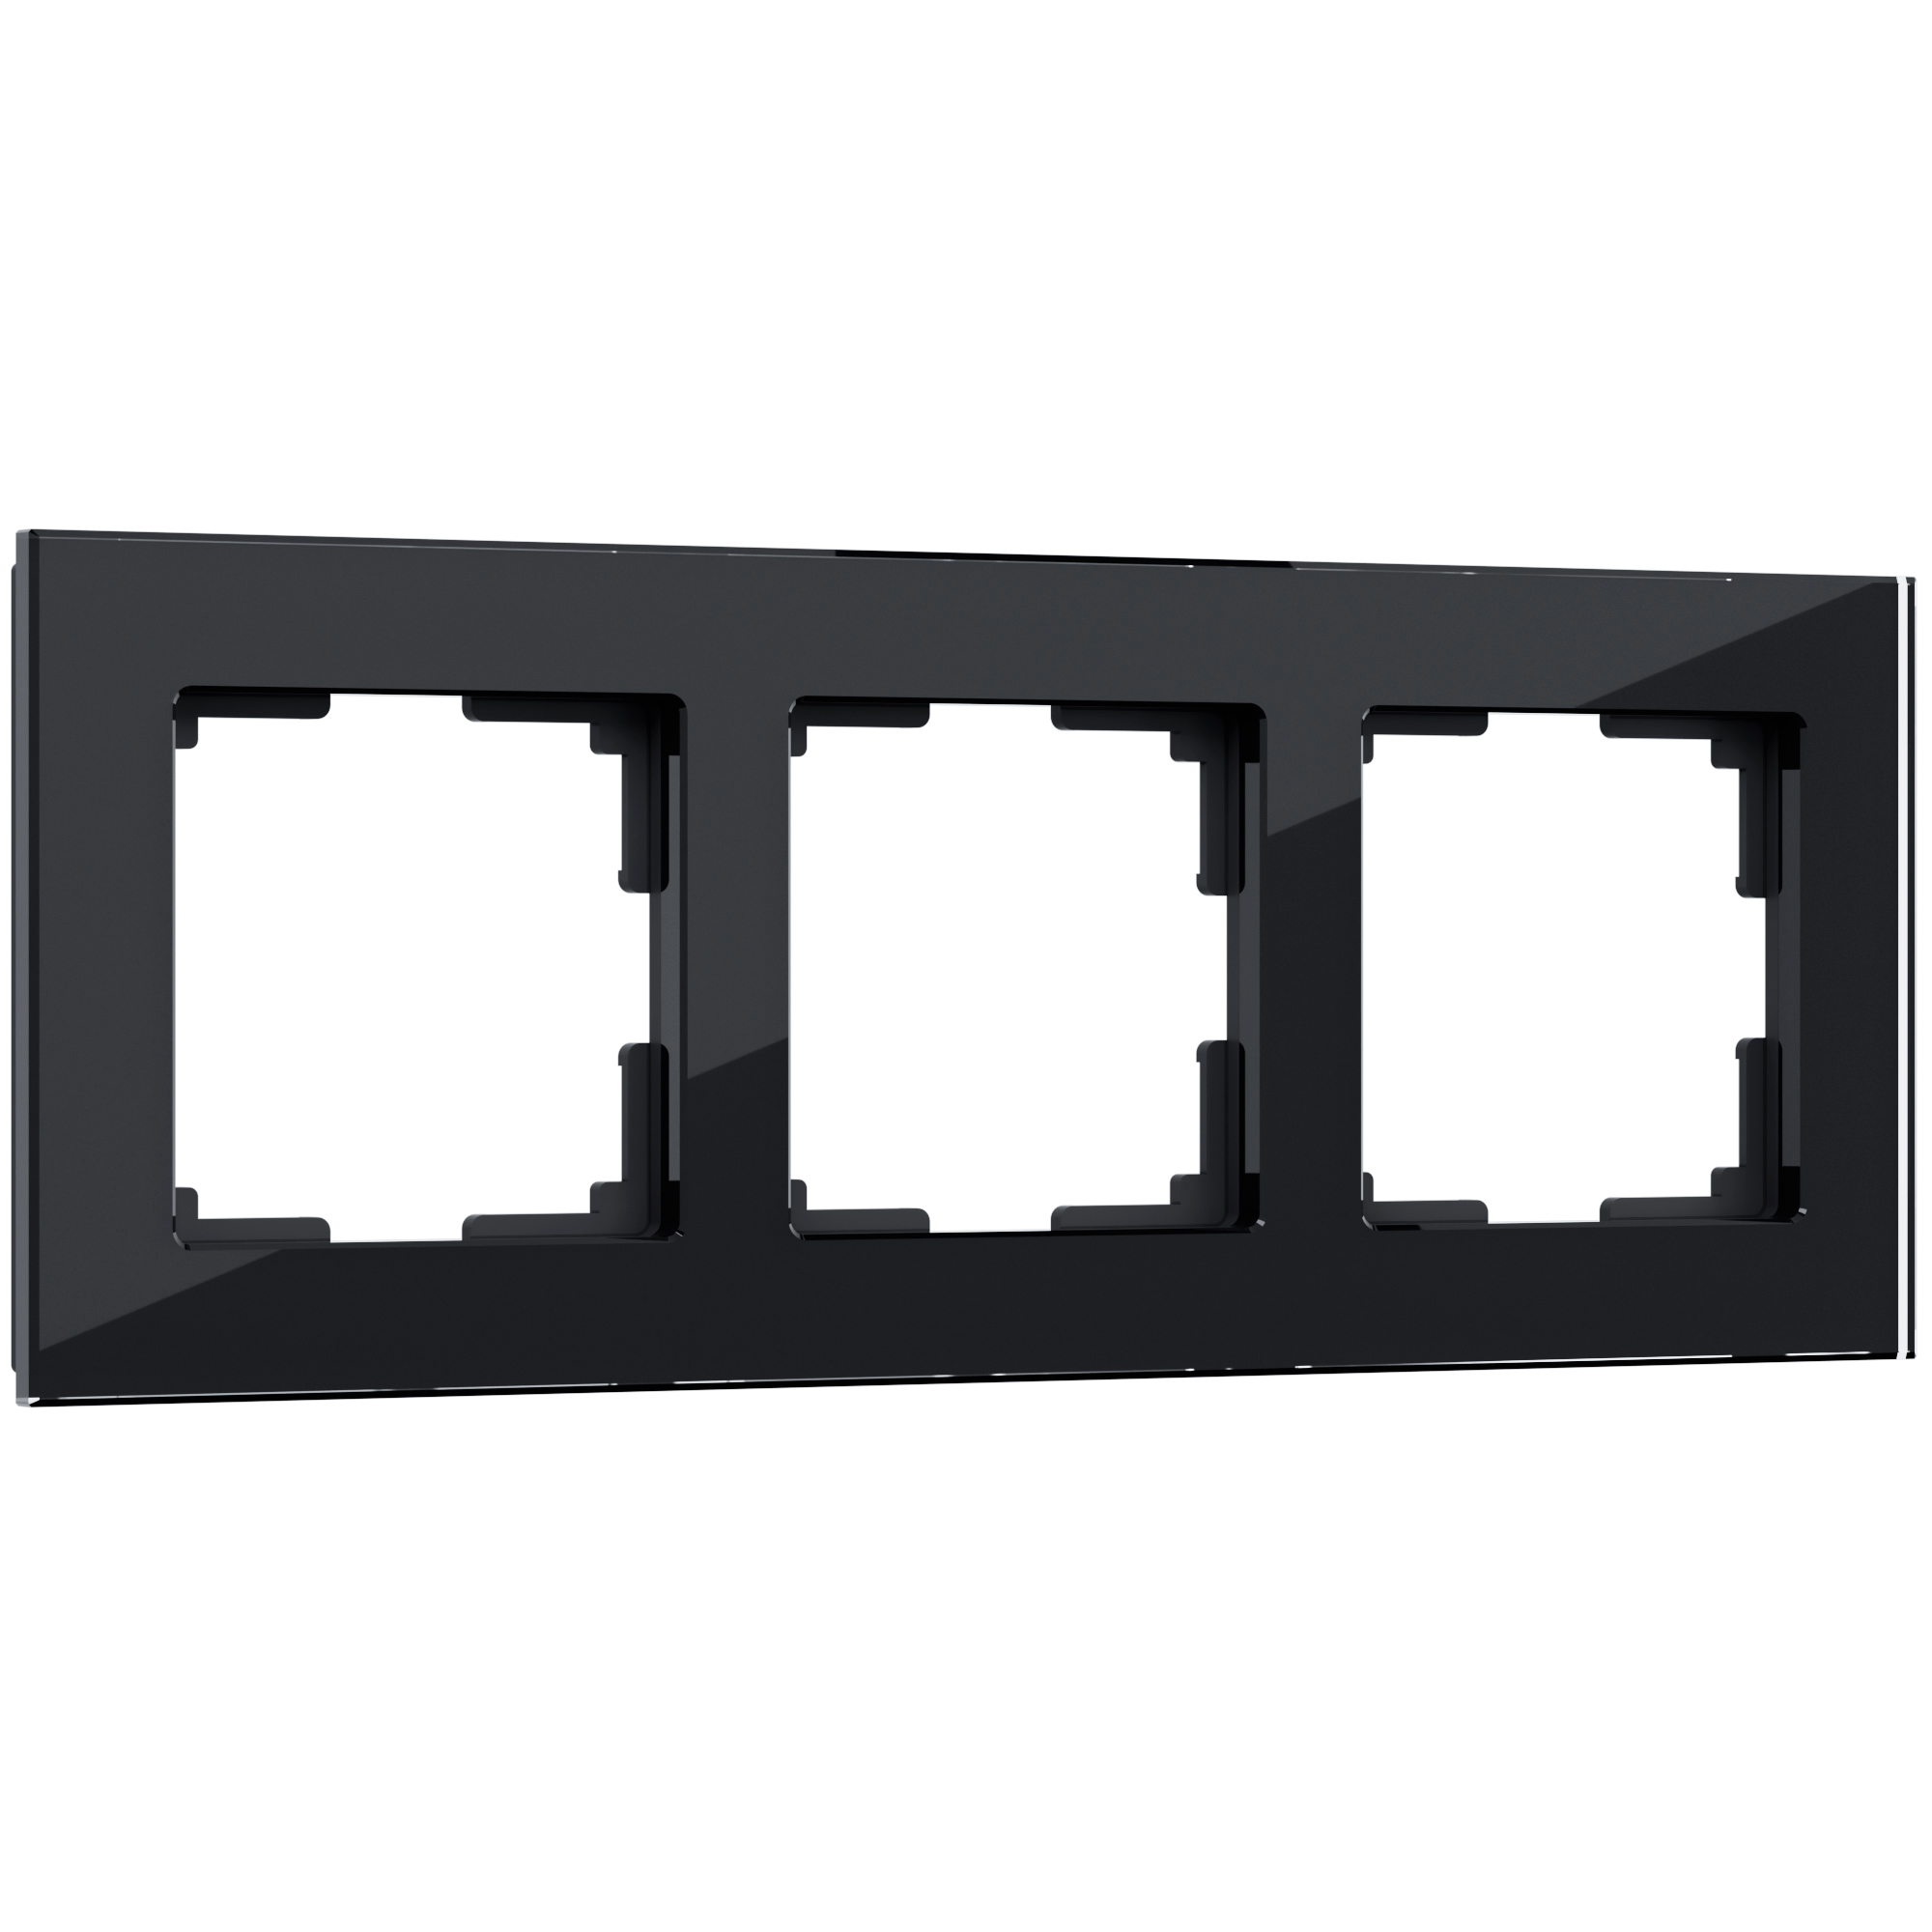 Рамка для розетки / выключателяна 3 поста Werkel  W0031108 Favorit черный стекло рамка на 1 пост werkel favorit w0011111 4690389159497